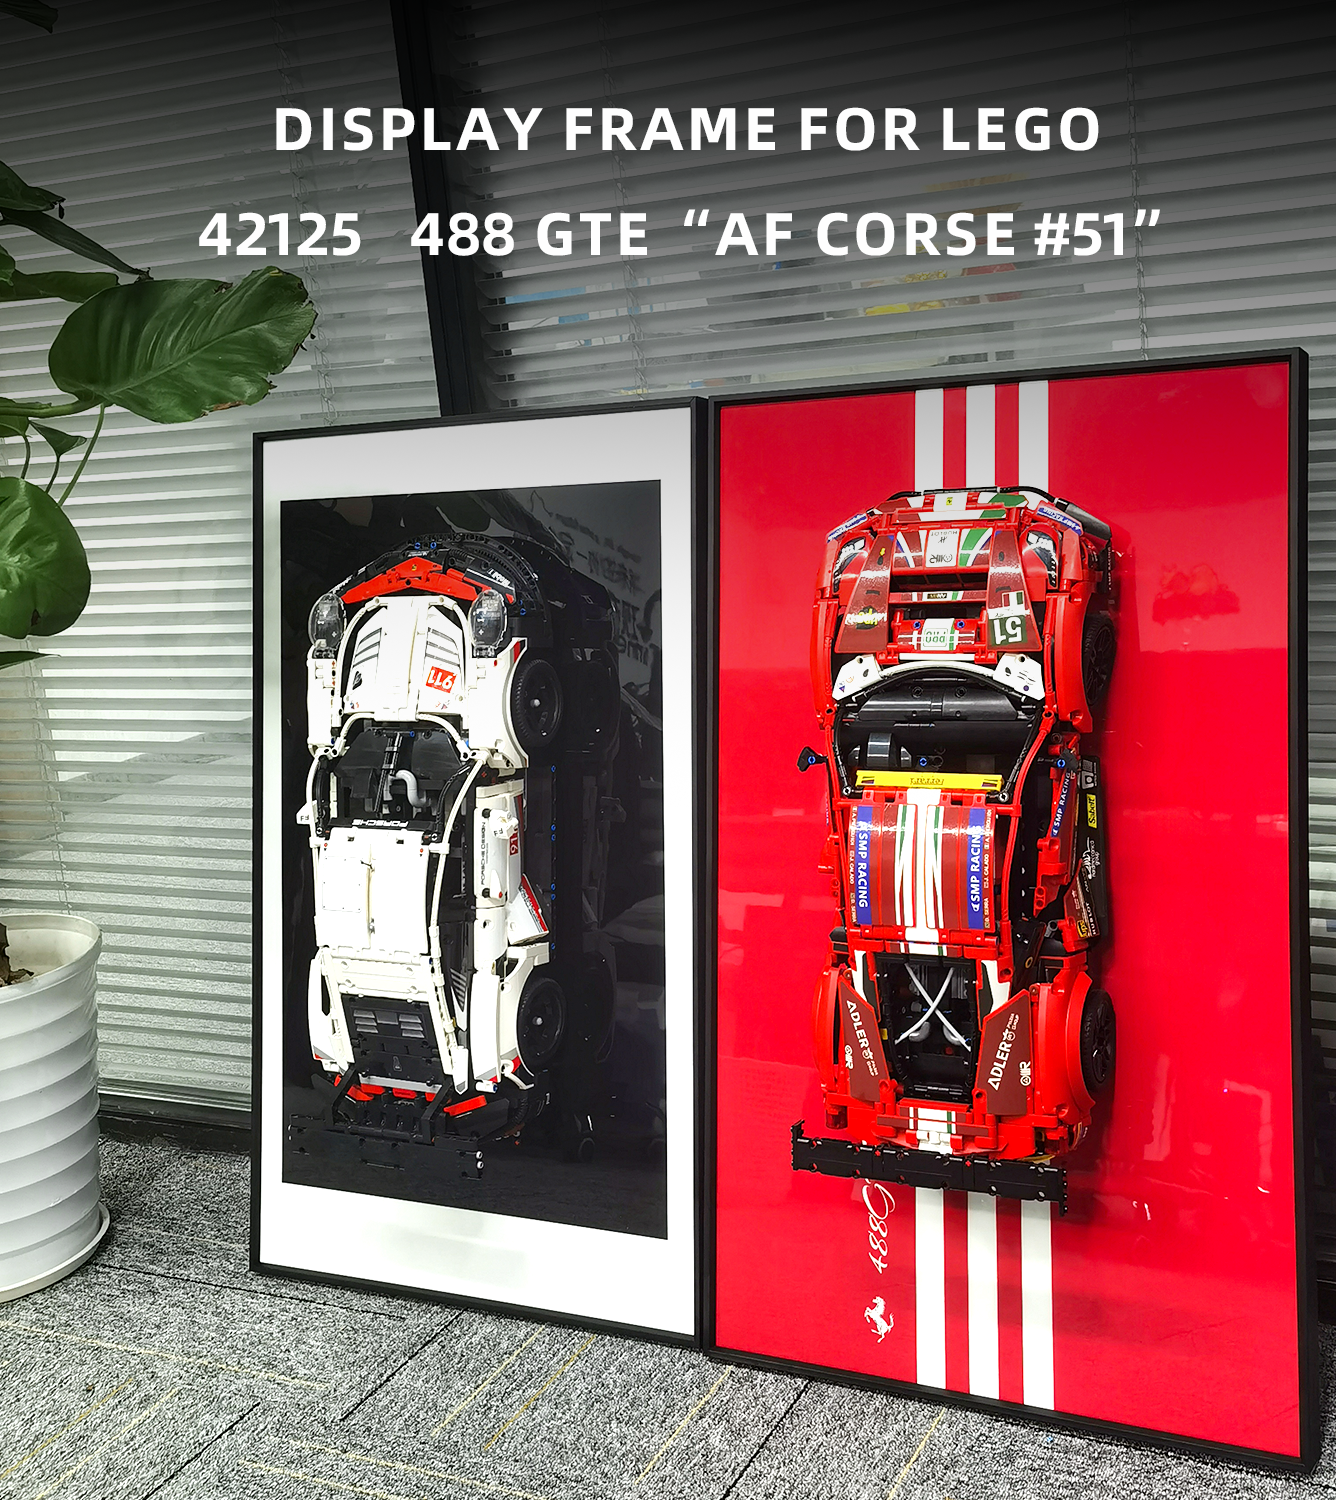 Display Wallboard for Lego Ferrari 488 GTE 42125